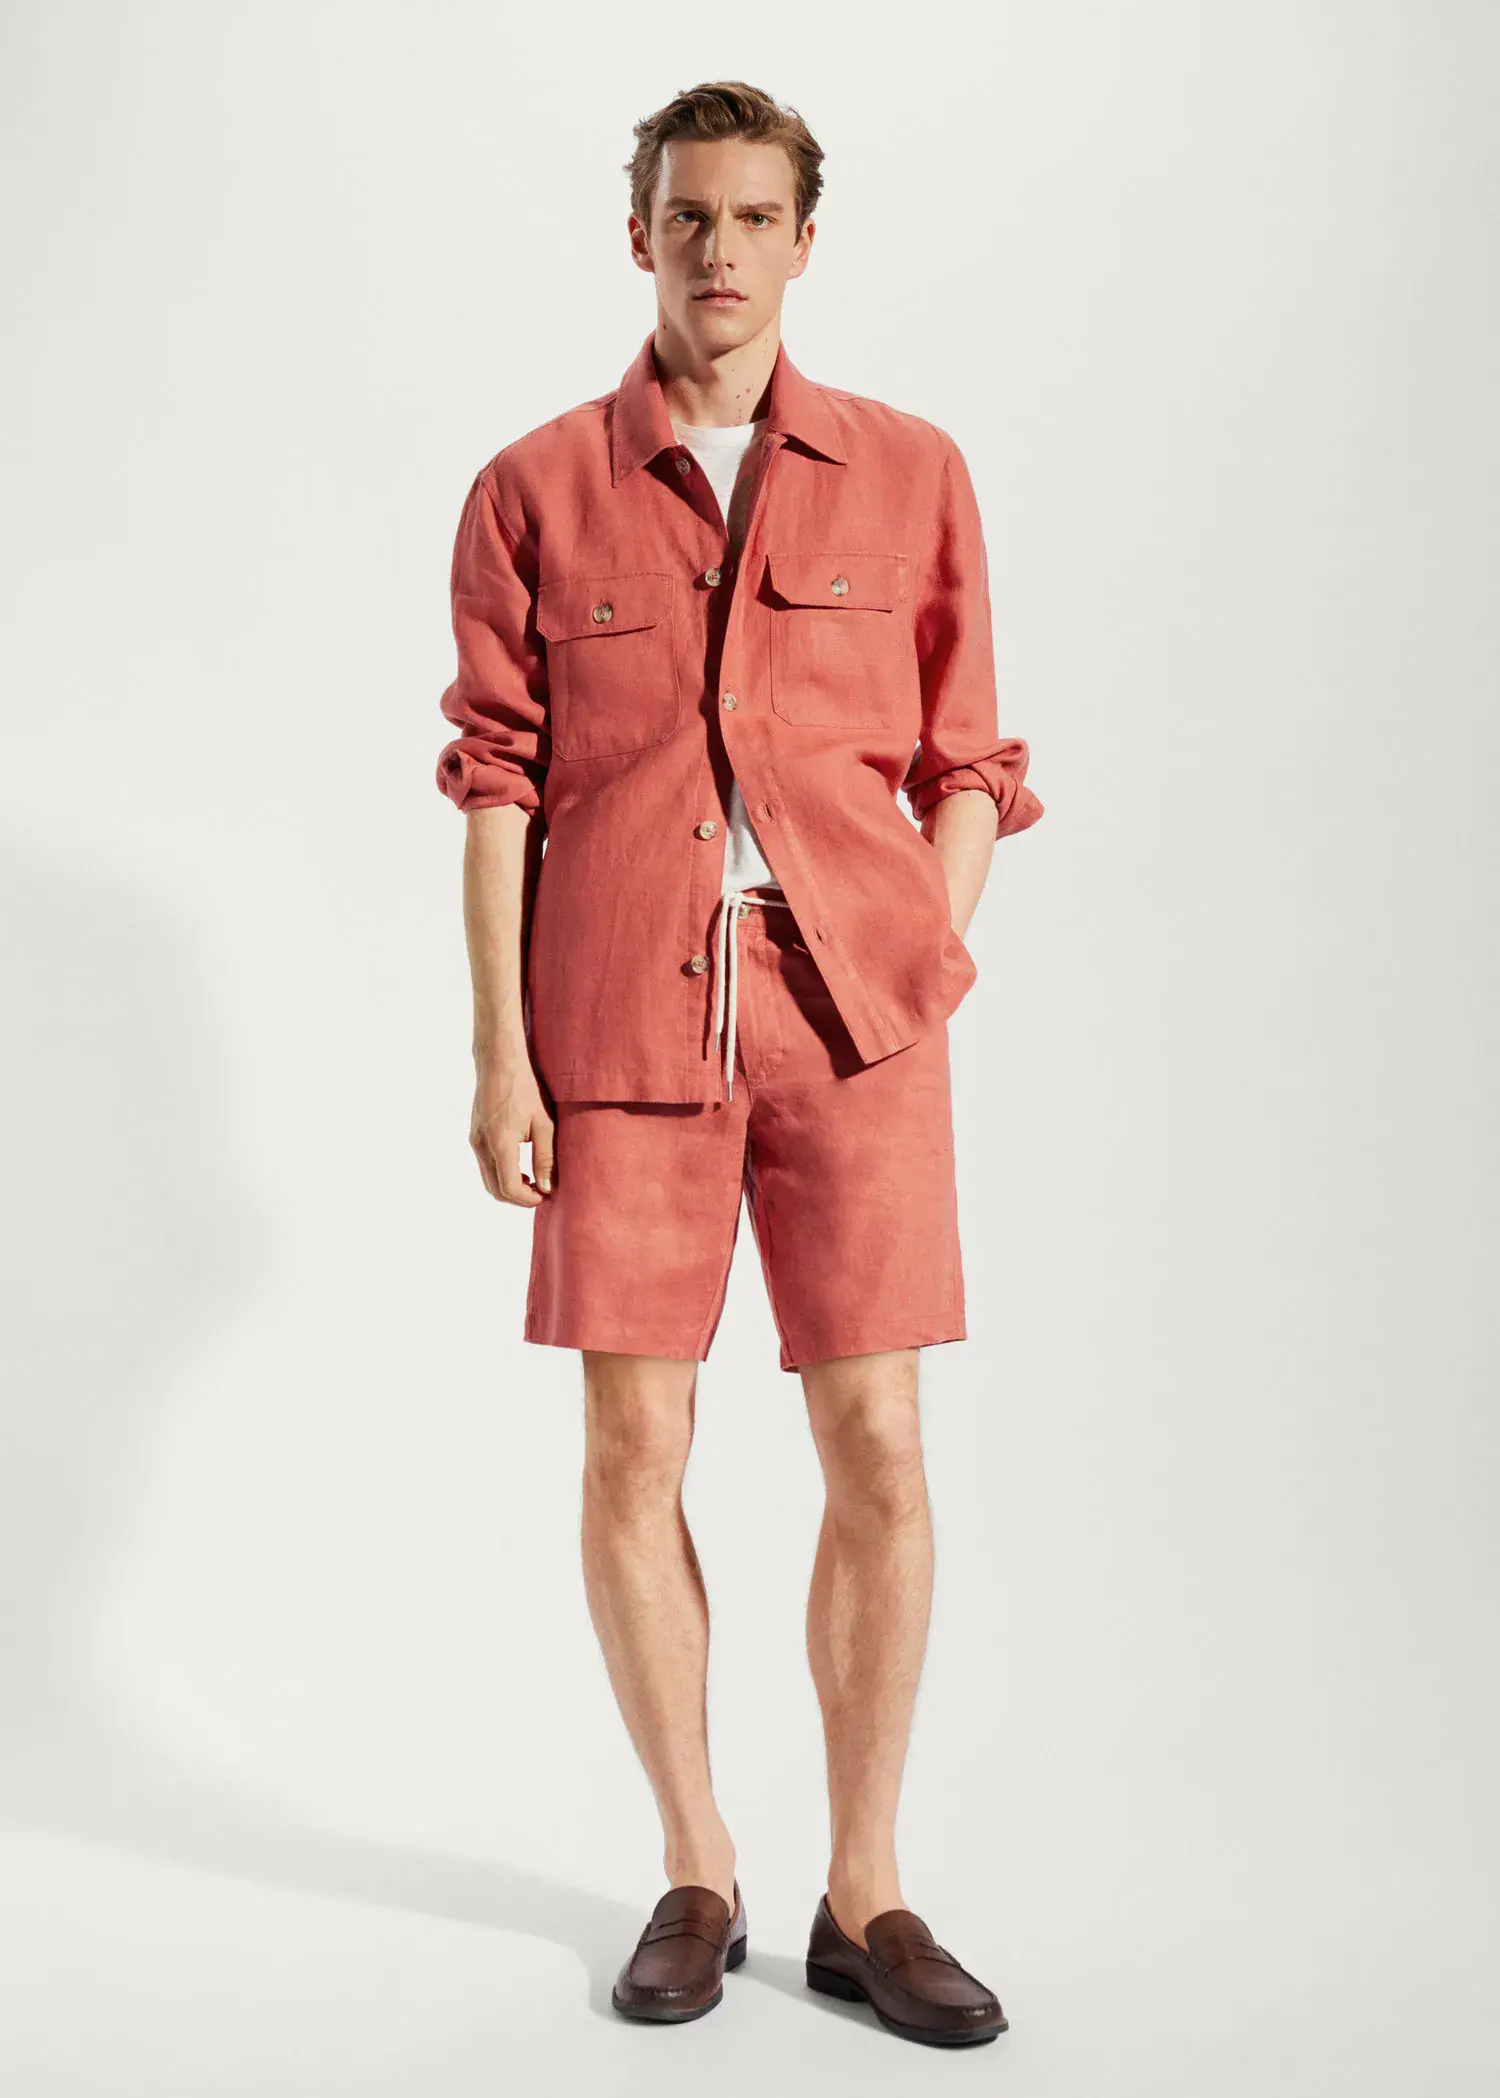 Mango 100% linen regular-fit overshirt. a man wearing a red shirt and shorts. 